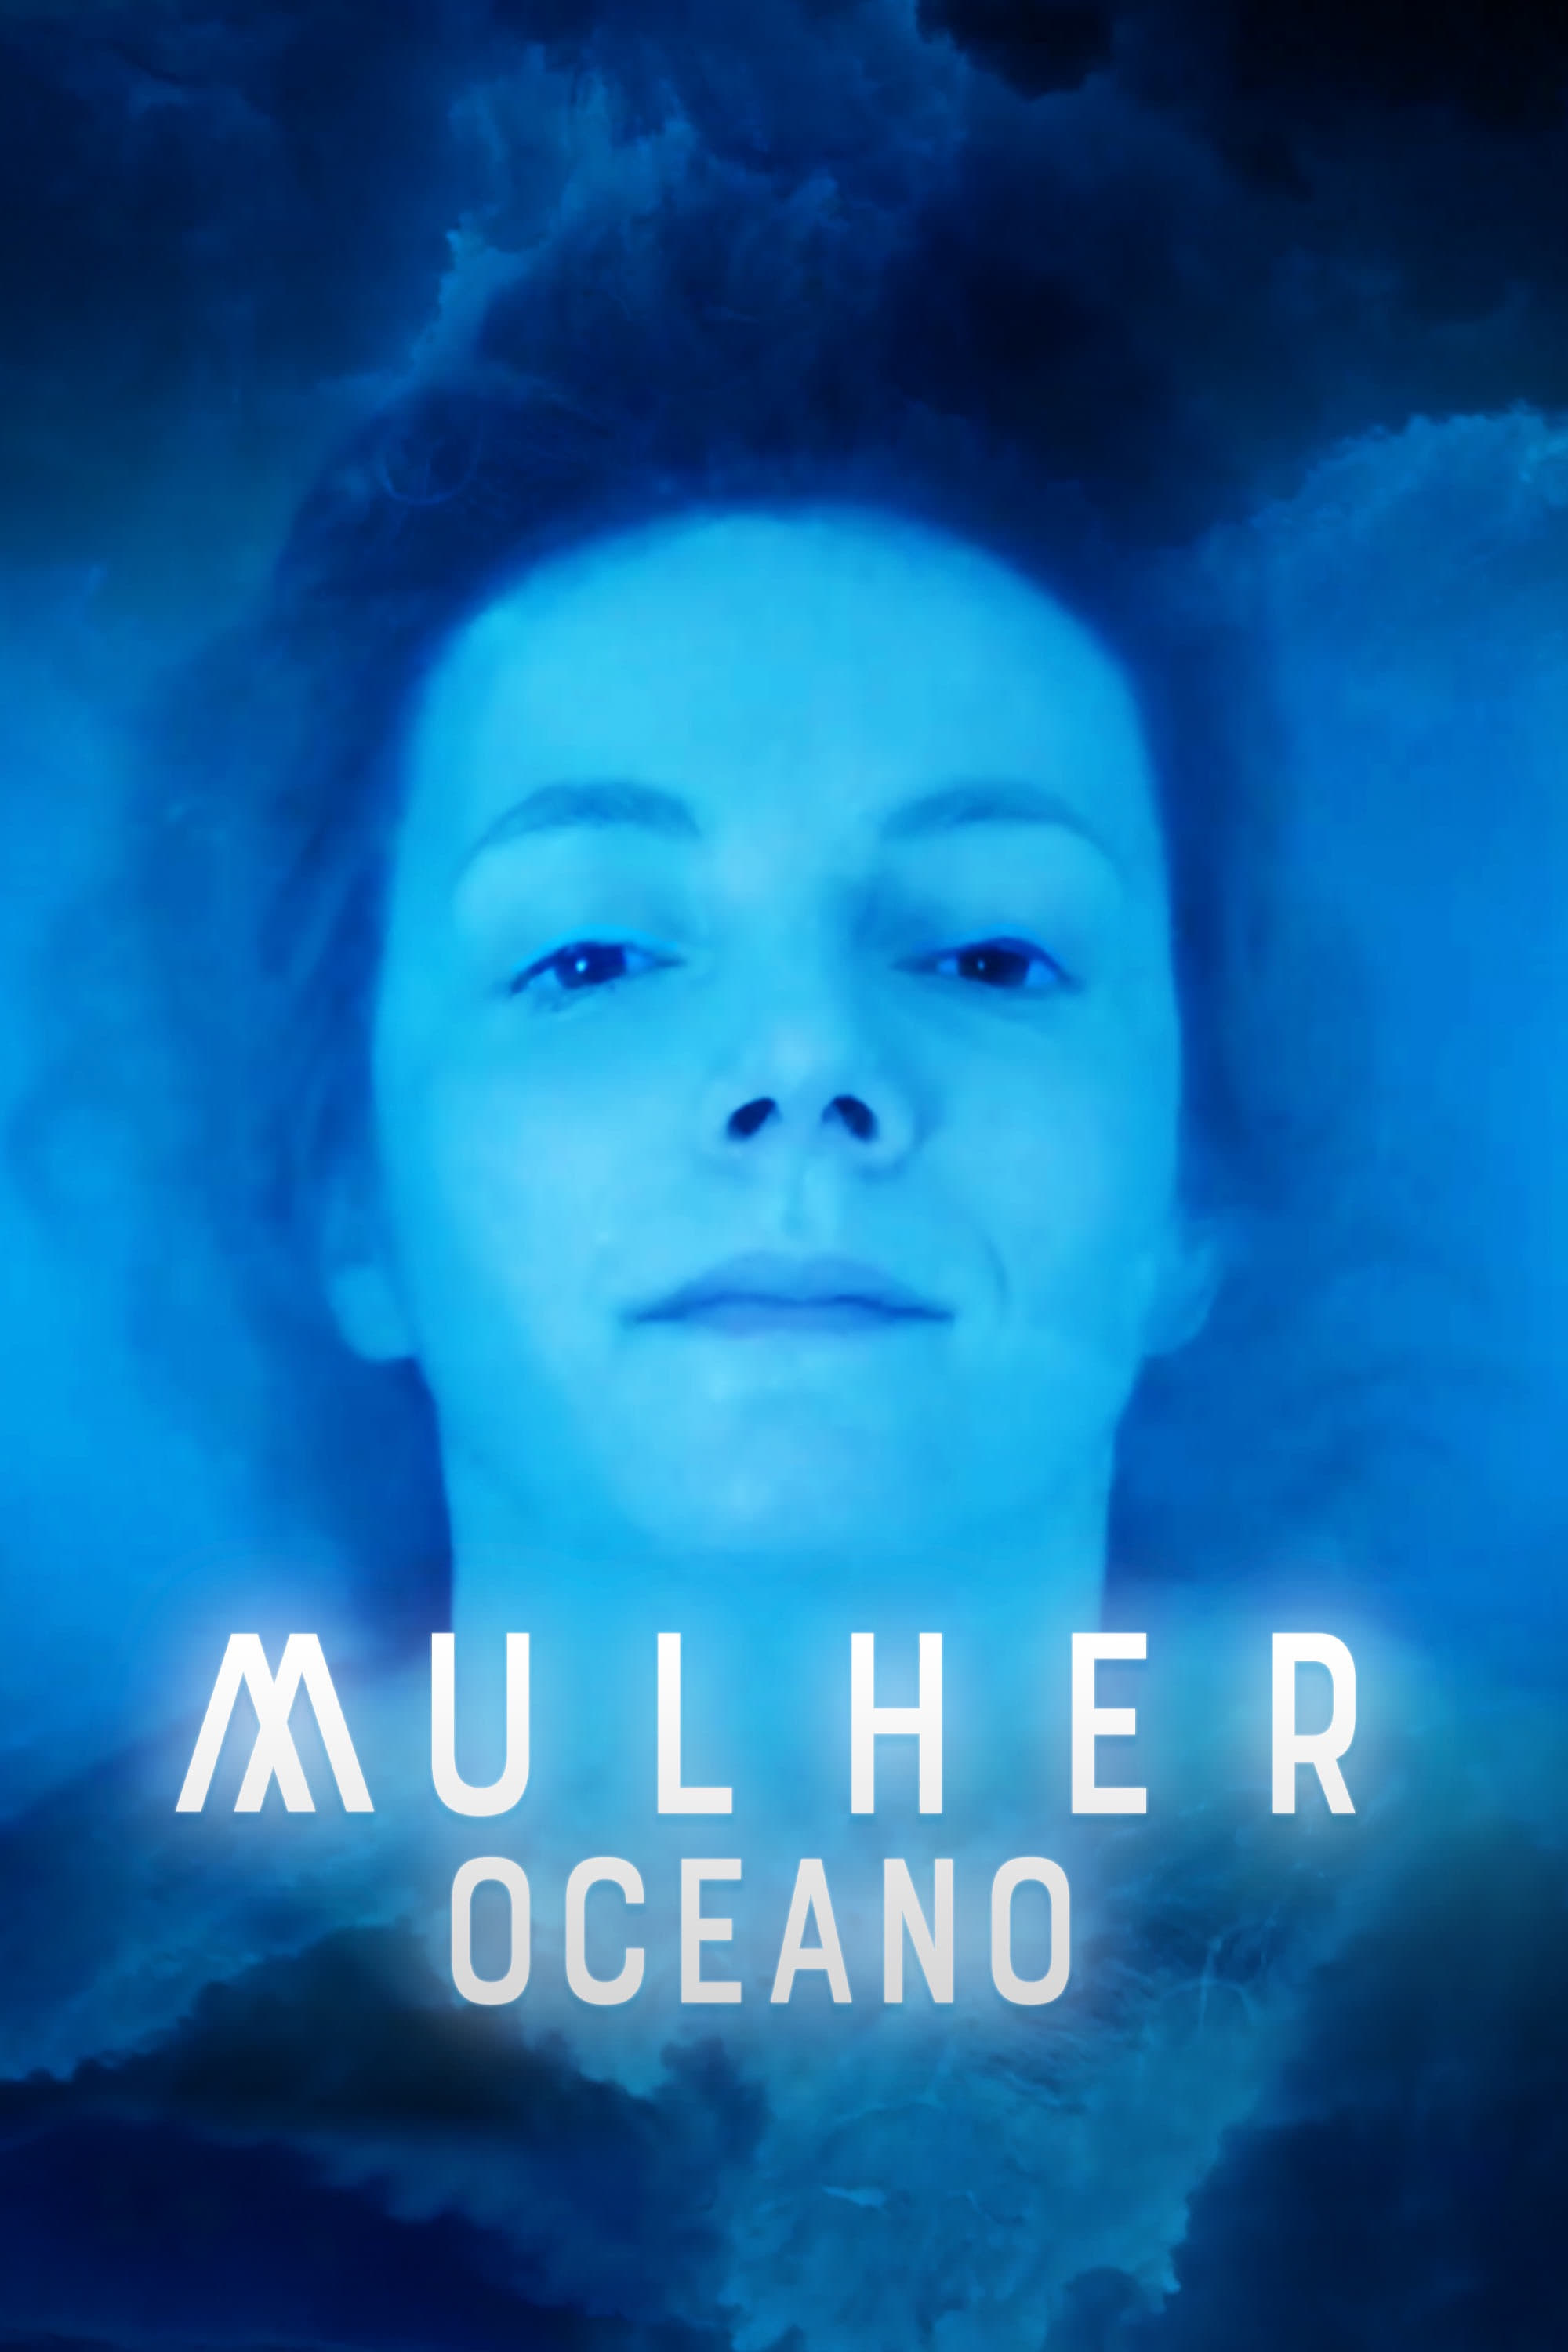 Mulher Oceano film